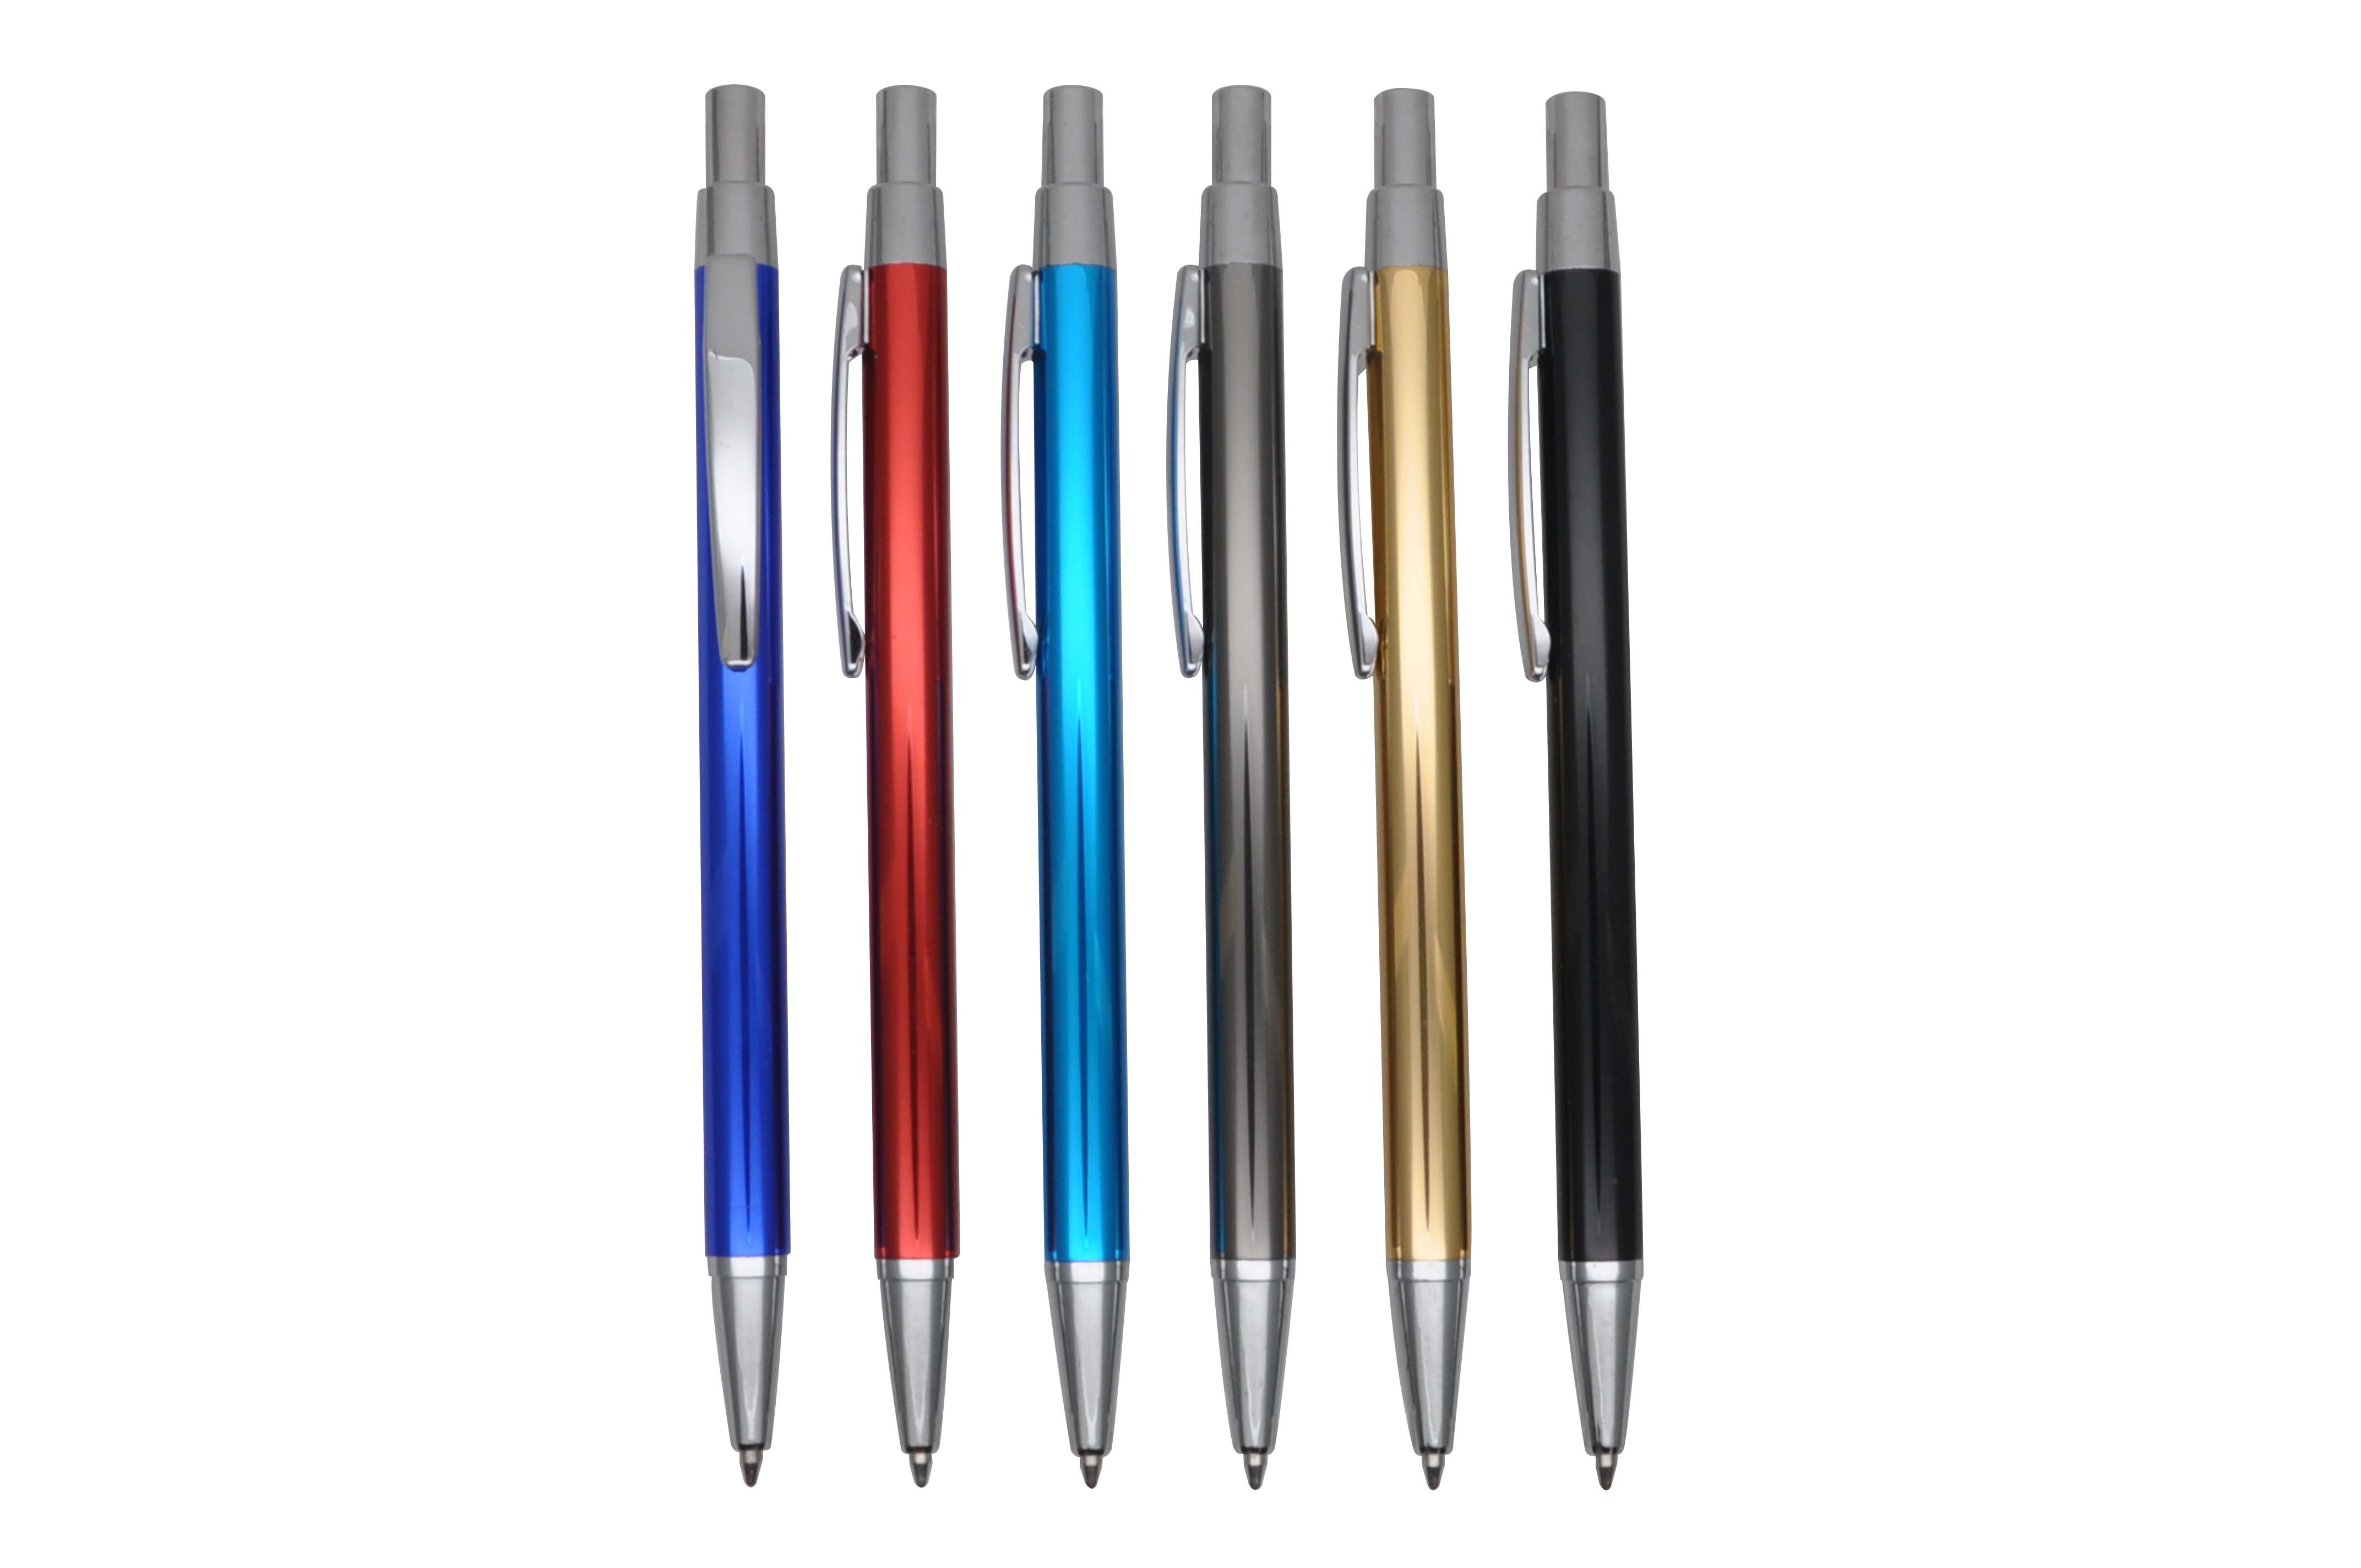 MP1378-1B metal aluminium ballpoint pen